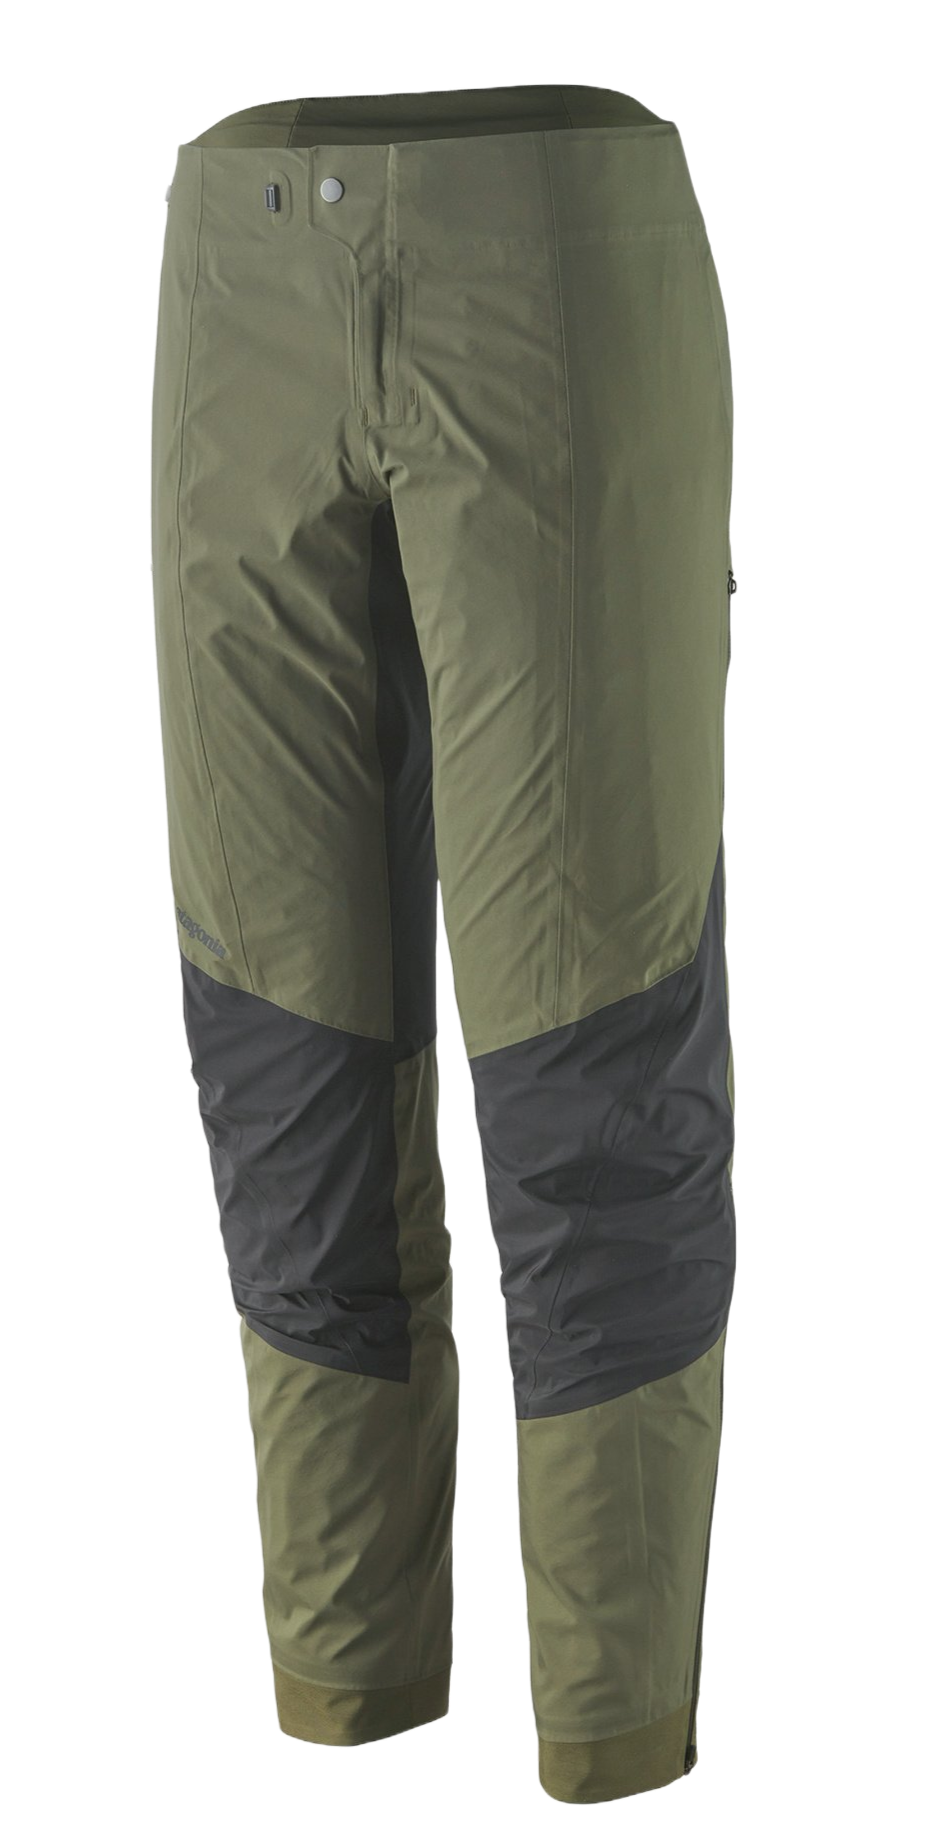 Patagonia Dirt Roamer Storm, una chaqueta antitormentas específica para MTB